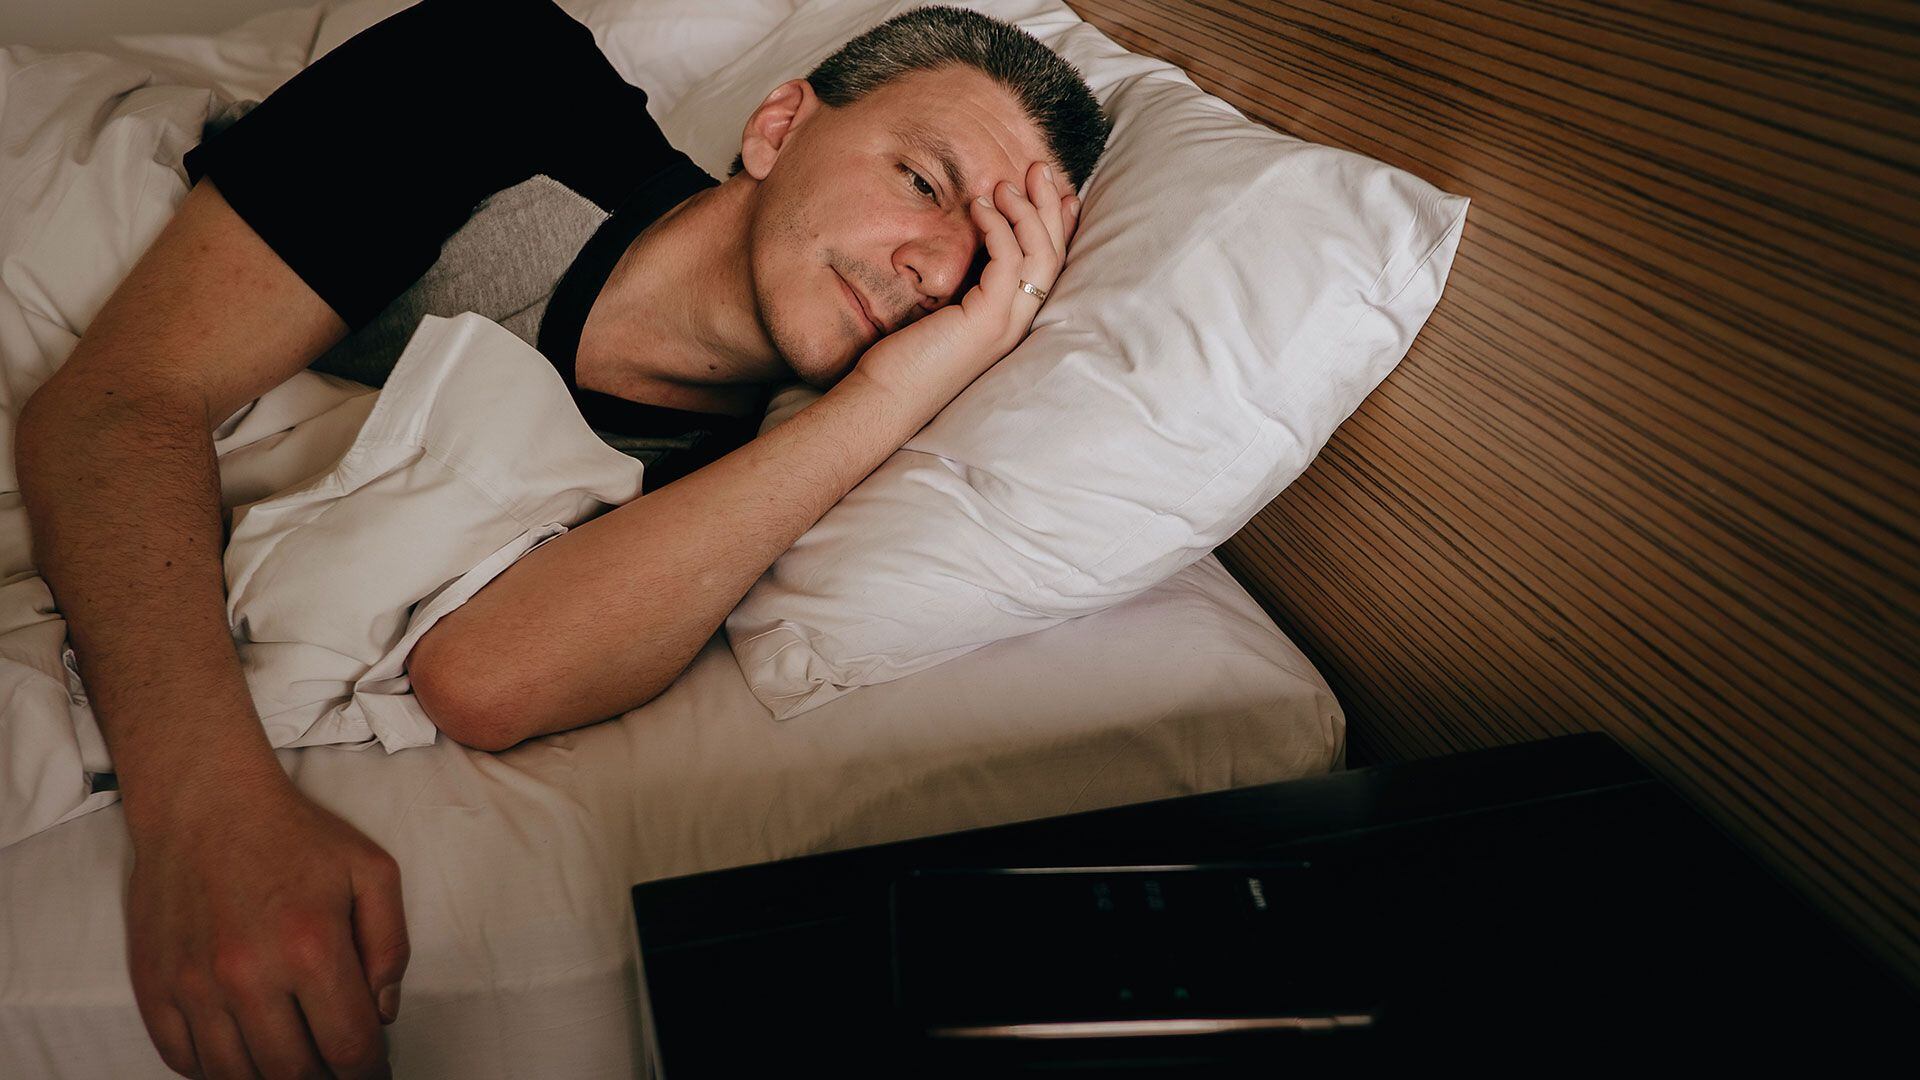 Las consecuencias del insomnio son variadas y pueden afectar profundamente nuestra cotidianidad con, por ejemplo, cambios en el estado de ánimo, irritabilidad, disminución del rendimiento y mayor probabilidad de accidentes (Getty)